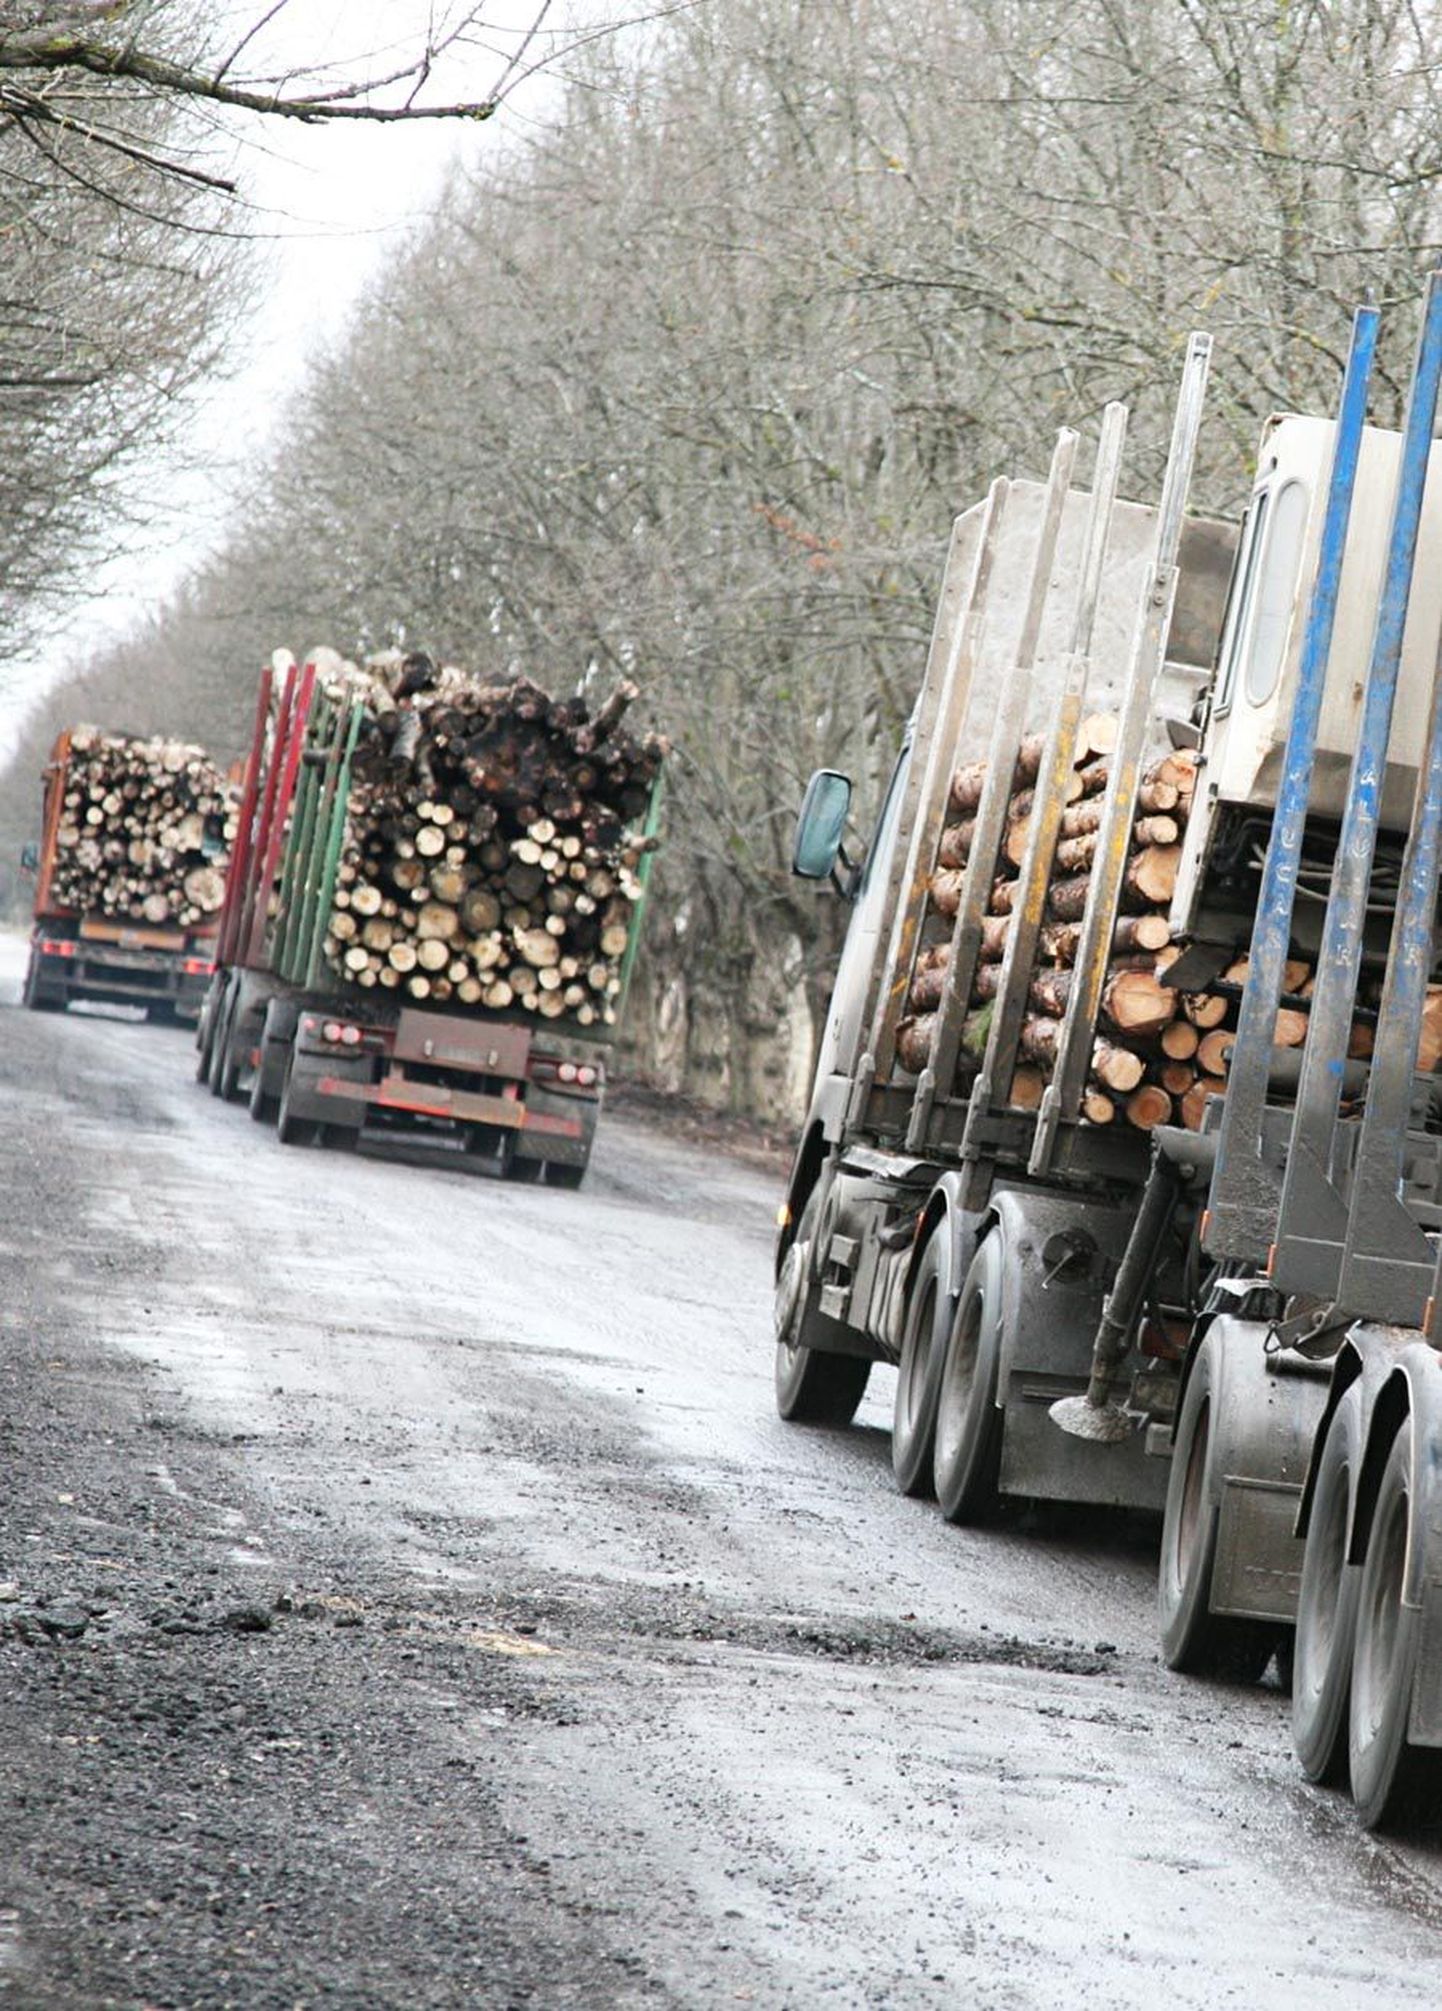 Metsaveoautod sõidavad enamasti raskema koormaga, kui seadus lubab.